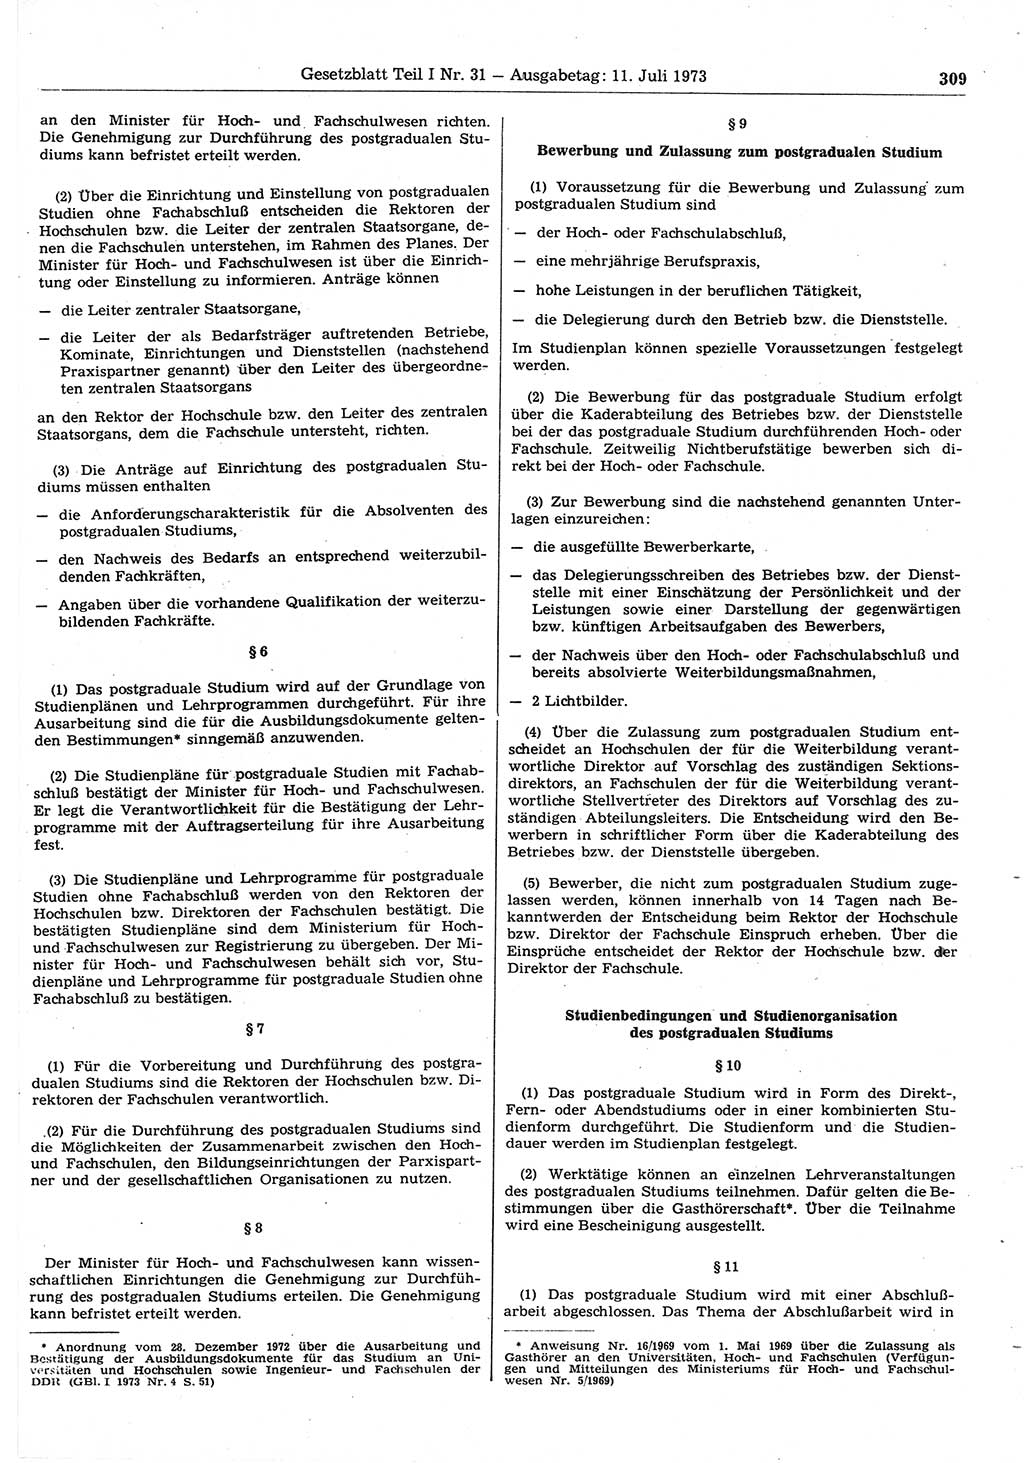 Gesetzblatt (GBl.) der Deutschen Demokratischen Republik (DDR) Teil Ⅰ 1973, Seite 309 (GBl. DDR Ⅰ 1973, S. 309)